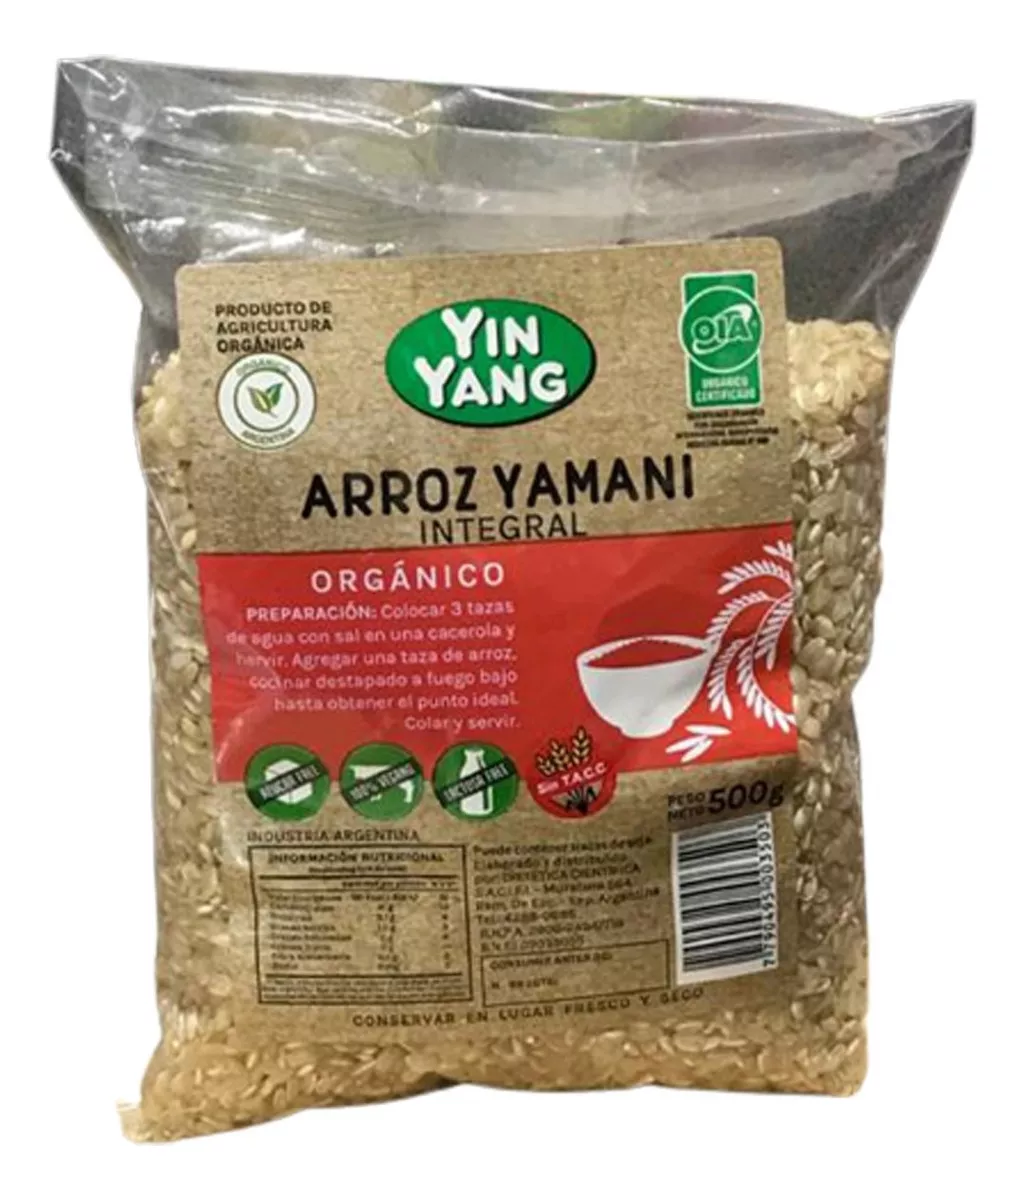 Primera imagen para búsqueda de arroz yamani